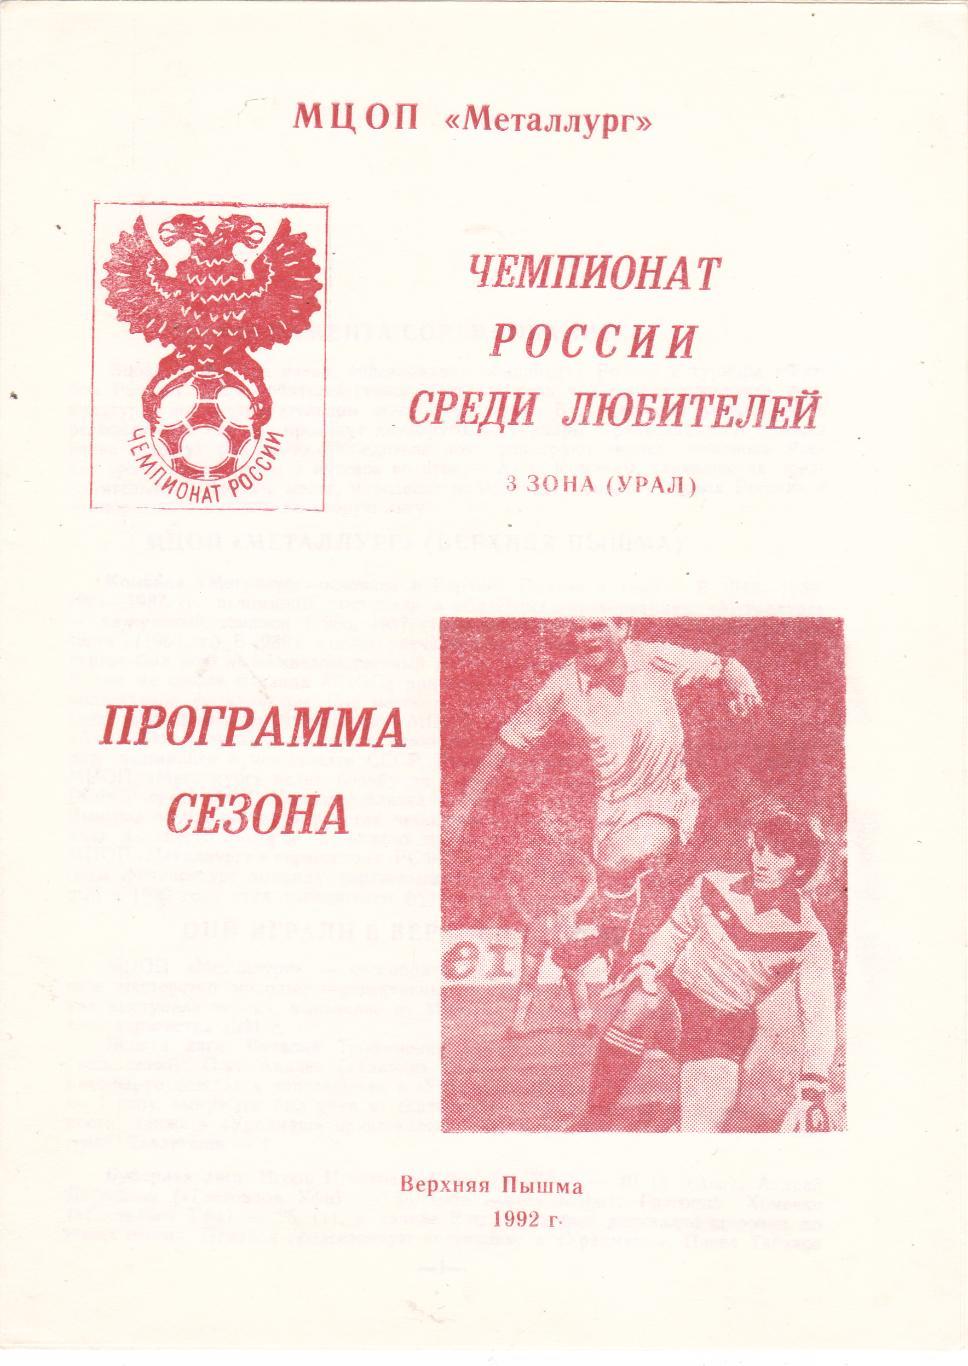 Пр-ма сезона Верхняя Пышма 1992.